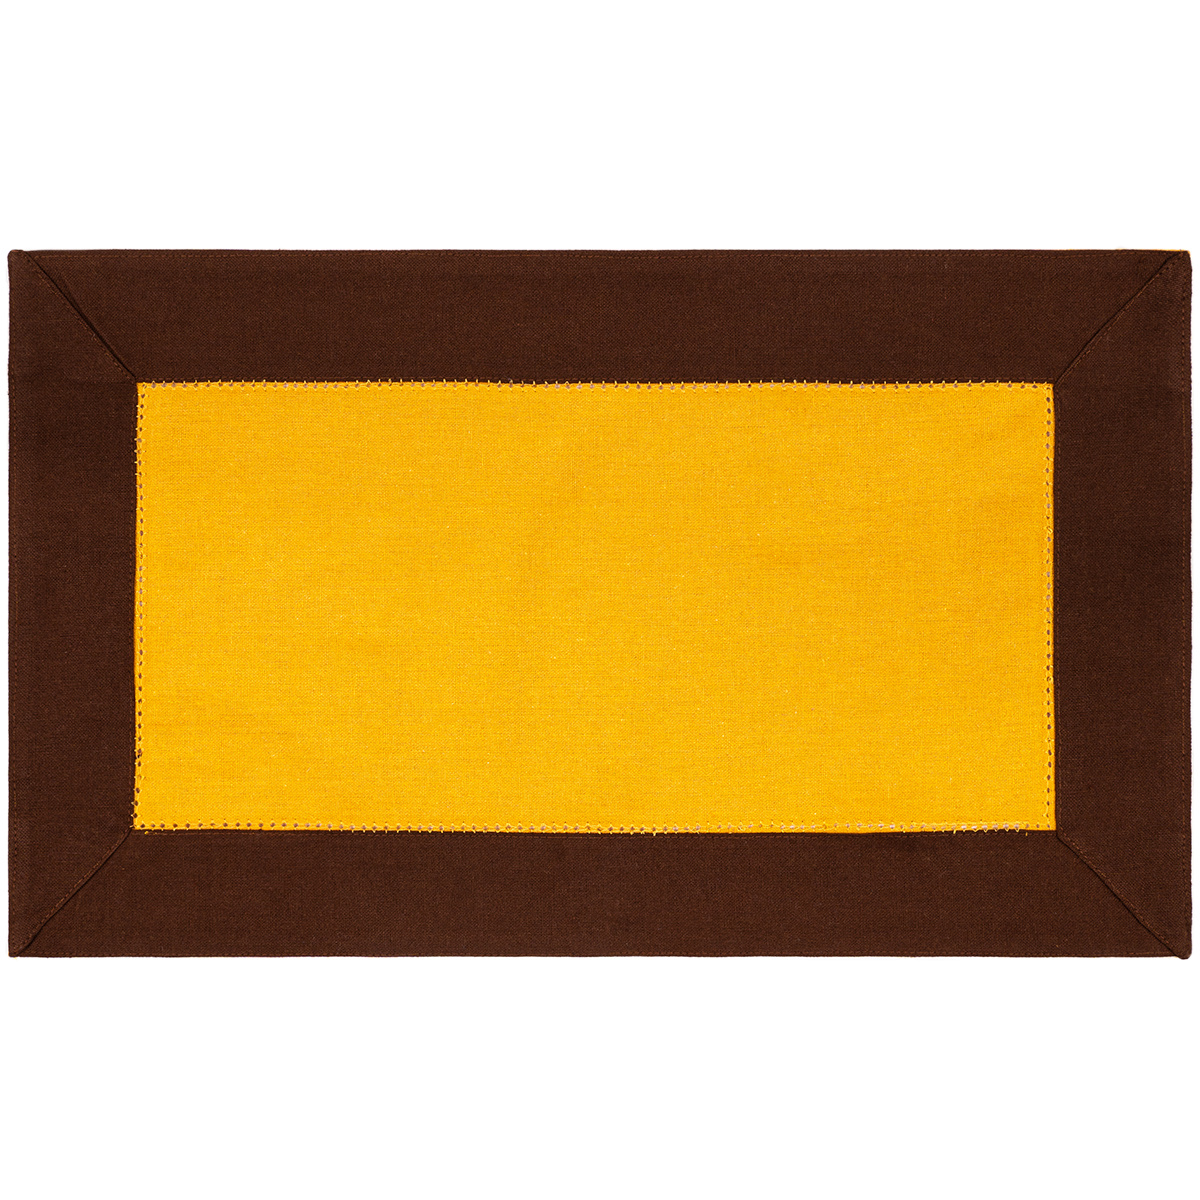 Heda tányéralátét sárga, 30 x 50 cm